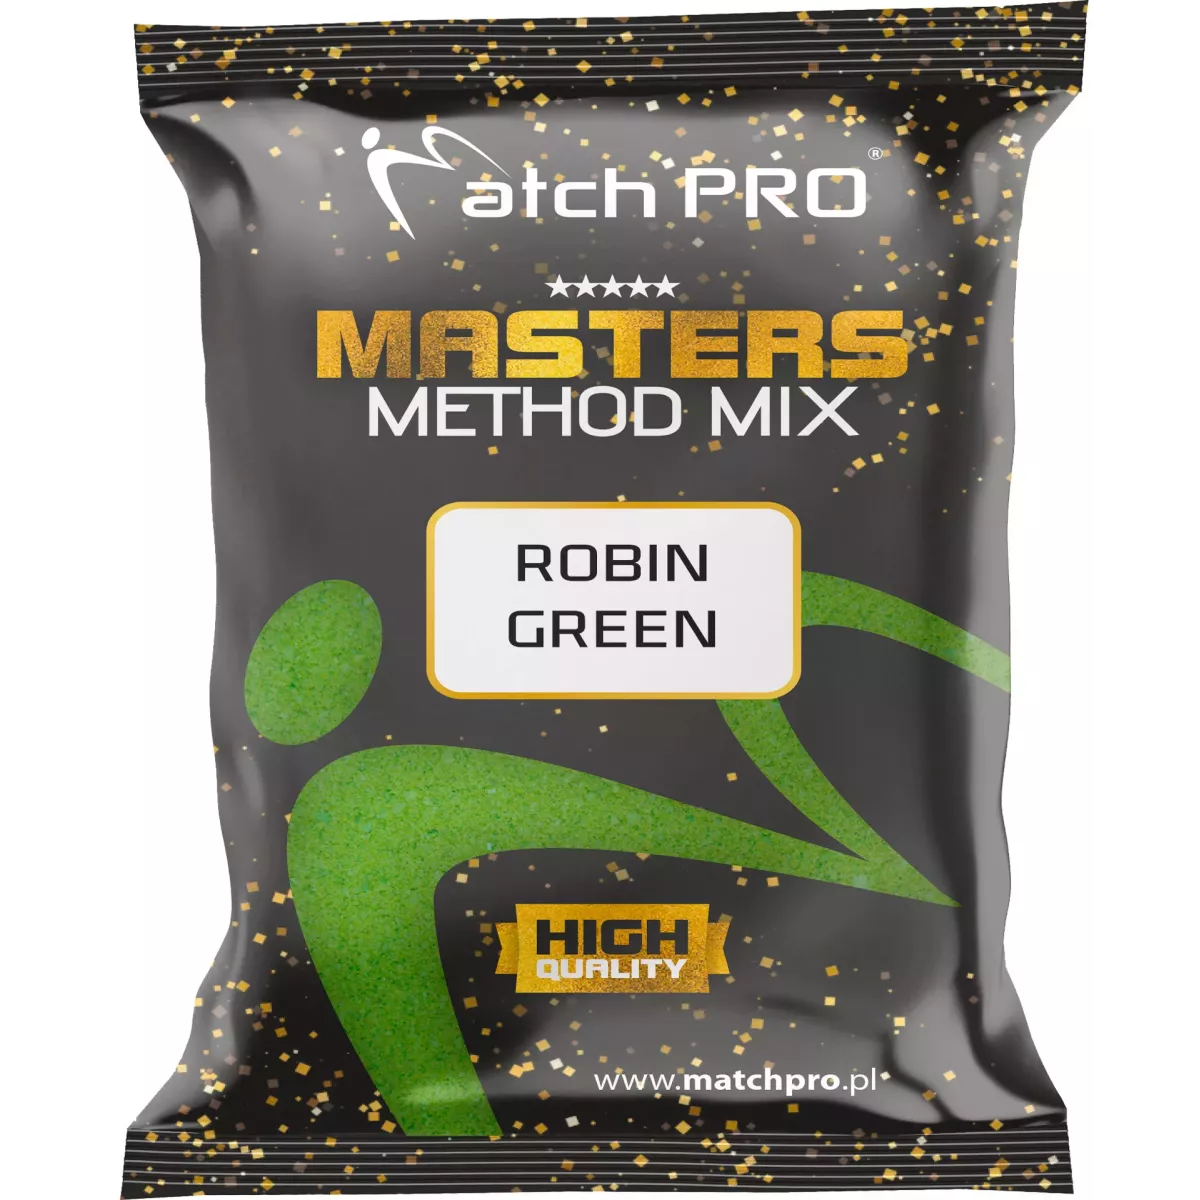 Zanęta MatchPro Method Mix Masters 700g - ROBIN GREEN